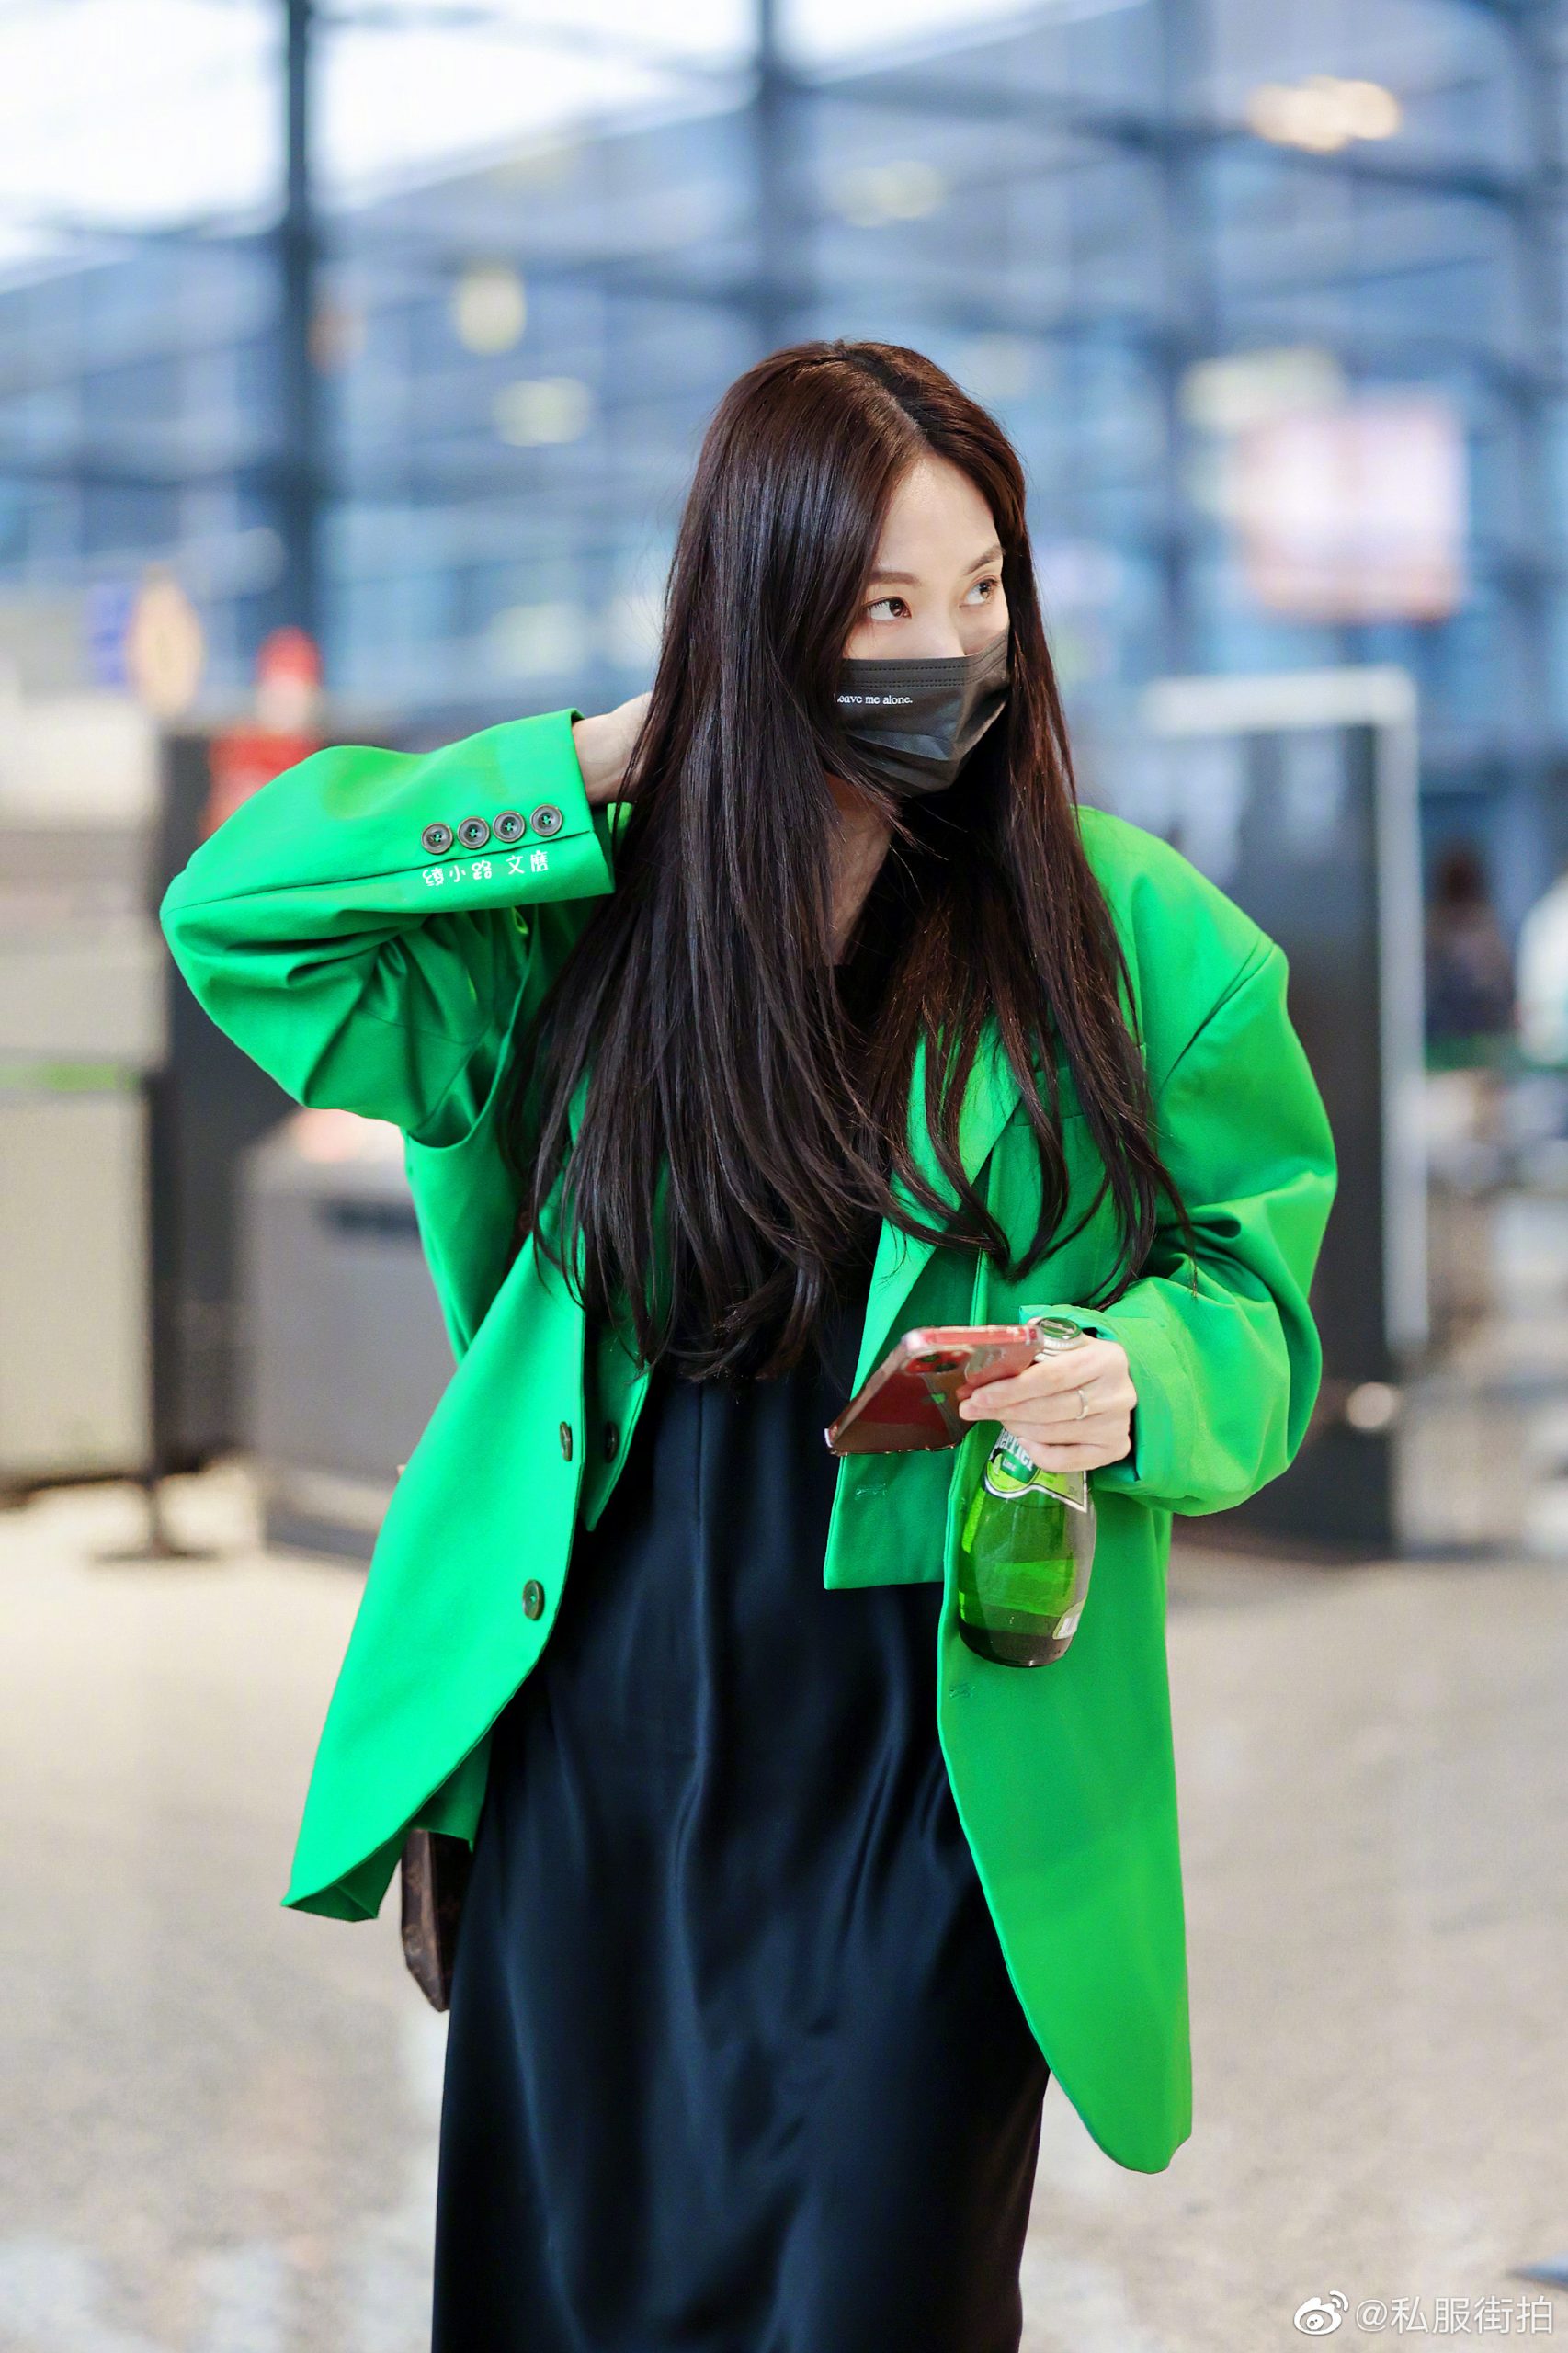 王霏霏 机场私服，亮绿色西装搭配吊带长裙，帅气不失温柔，惹眼又瞩目的存在